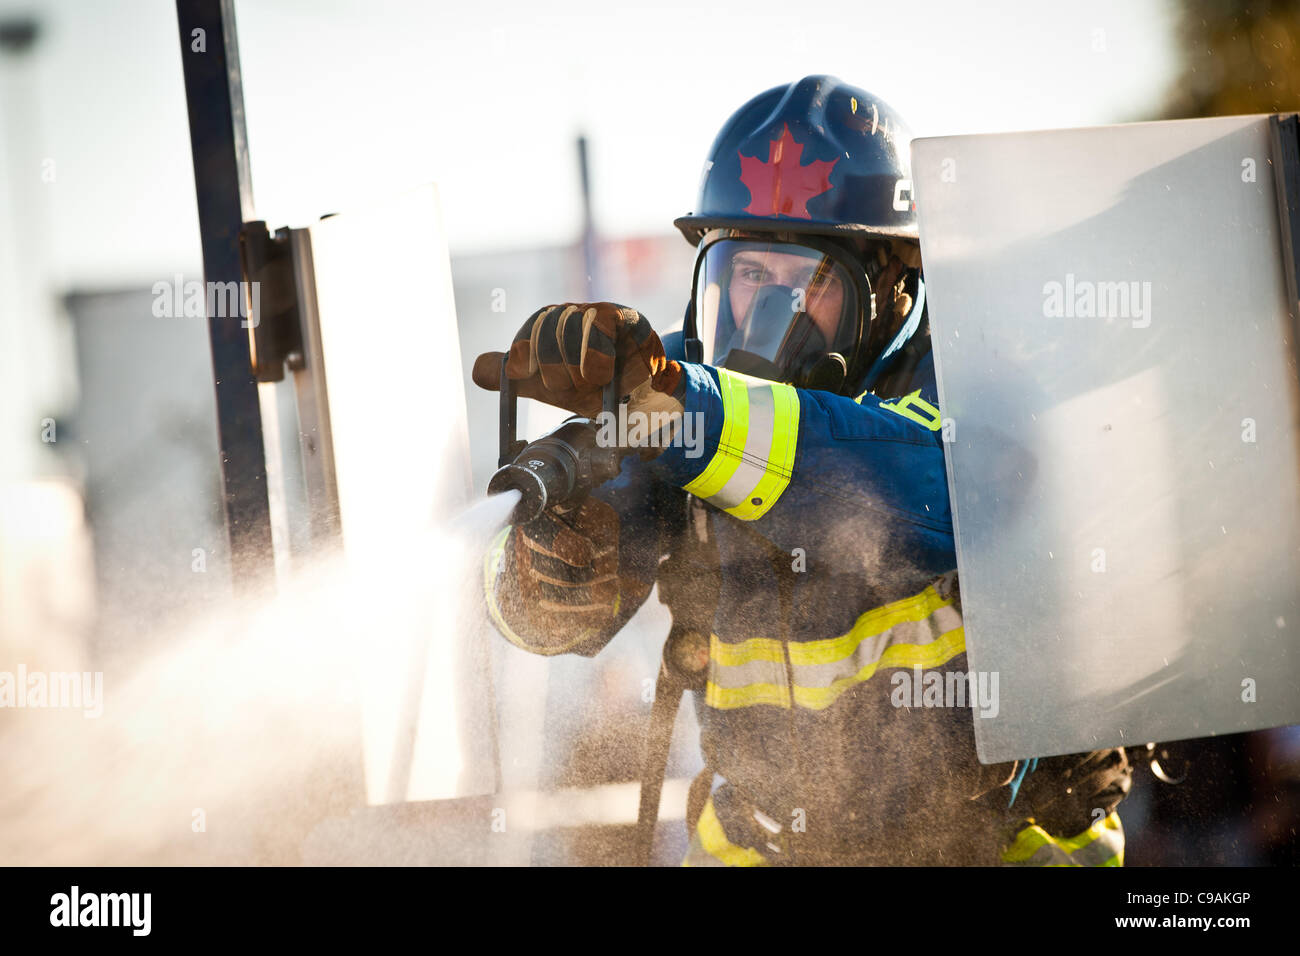 Un pompier du Canada vise un front sur une cible tout en portant l'incendie complet et de travailler contre la montre lors de la finale internationale du Firefighter Combat Challenge Le 18 novembre 2011 à Myrtle Beach, Caroline du Sud. Banque D'Images